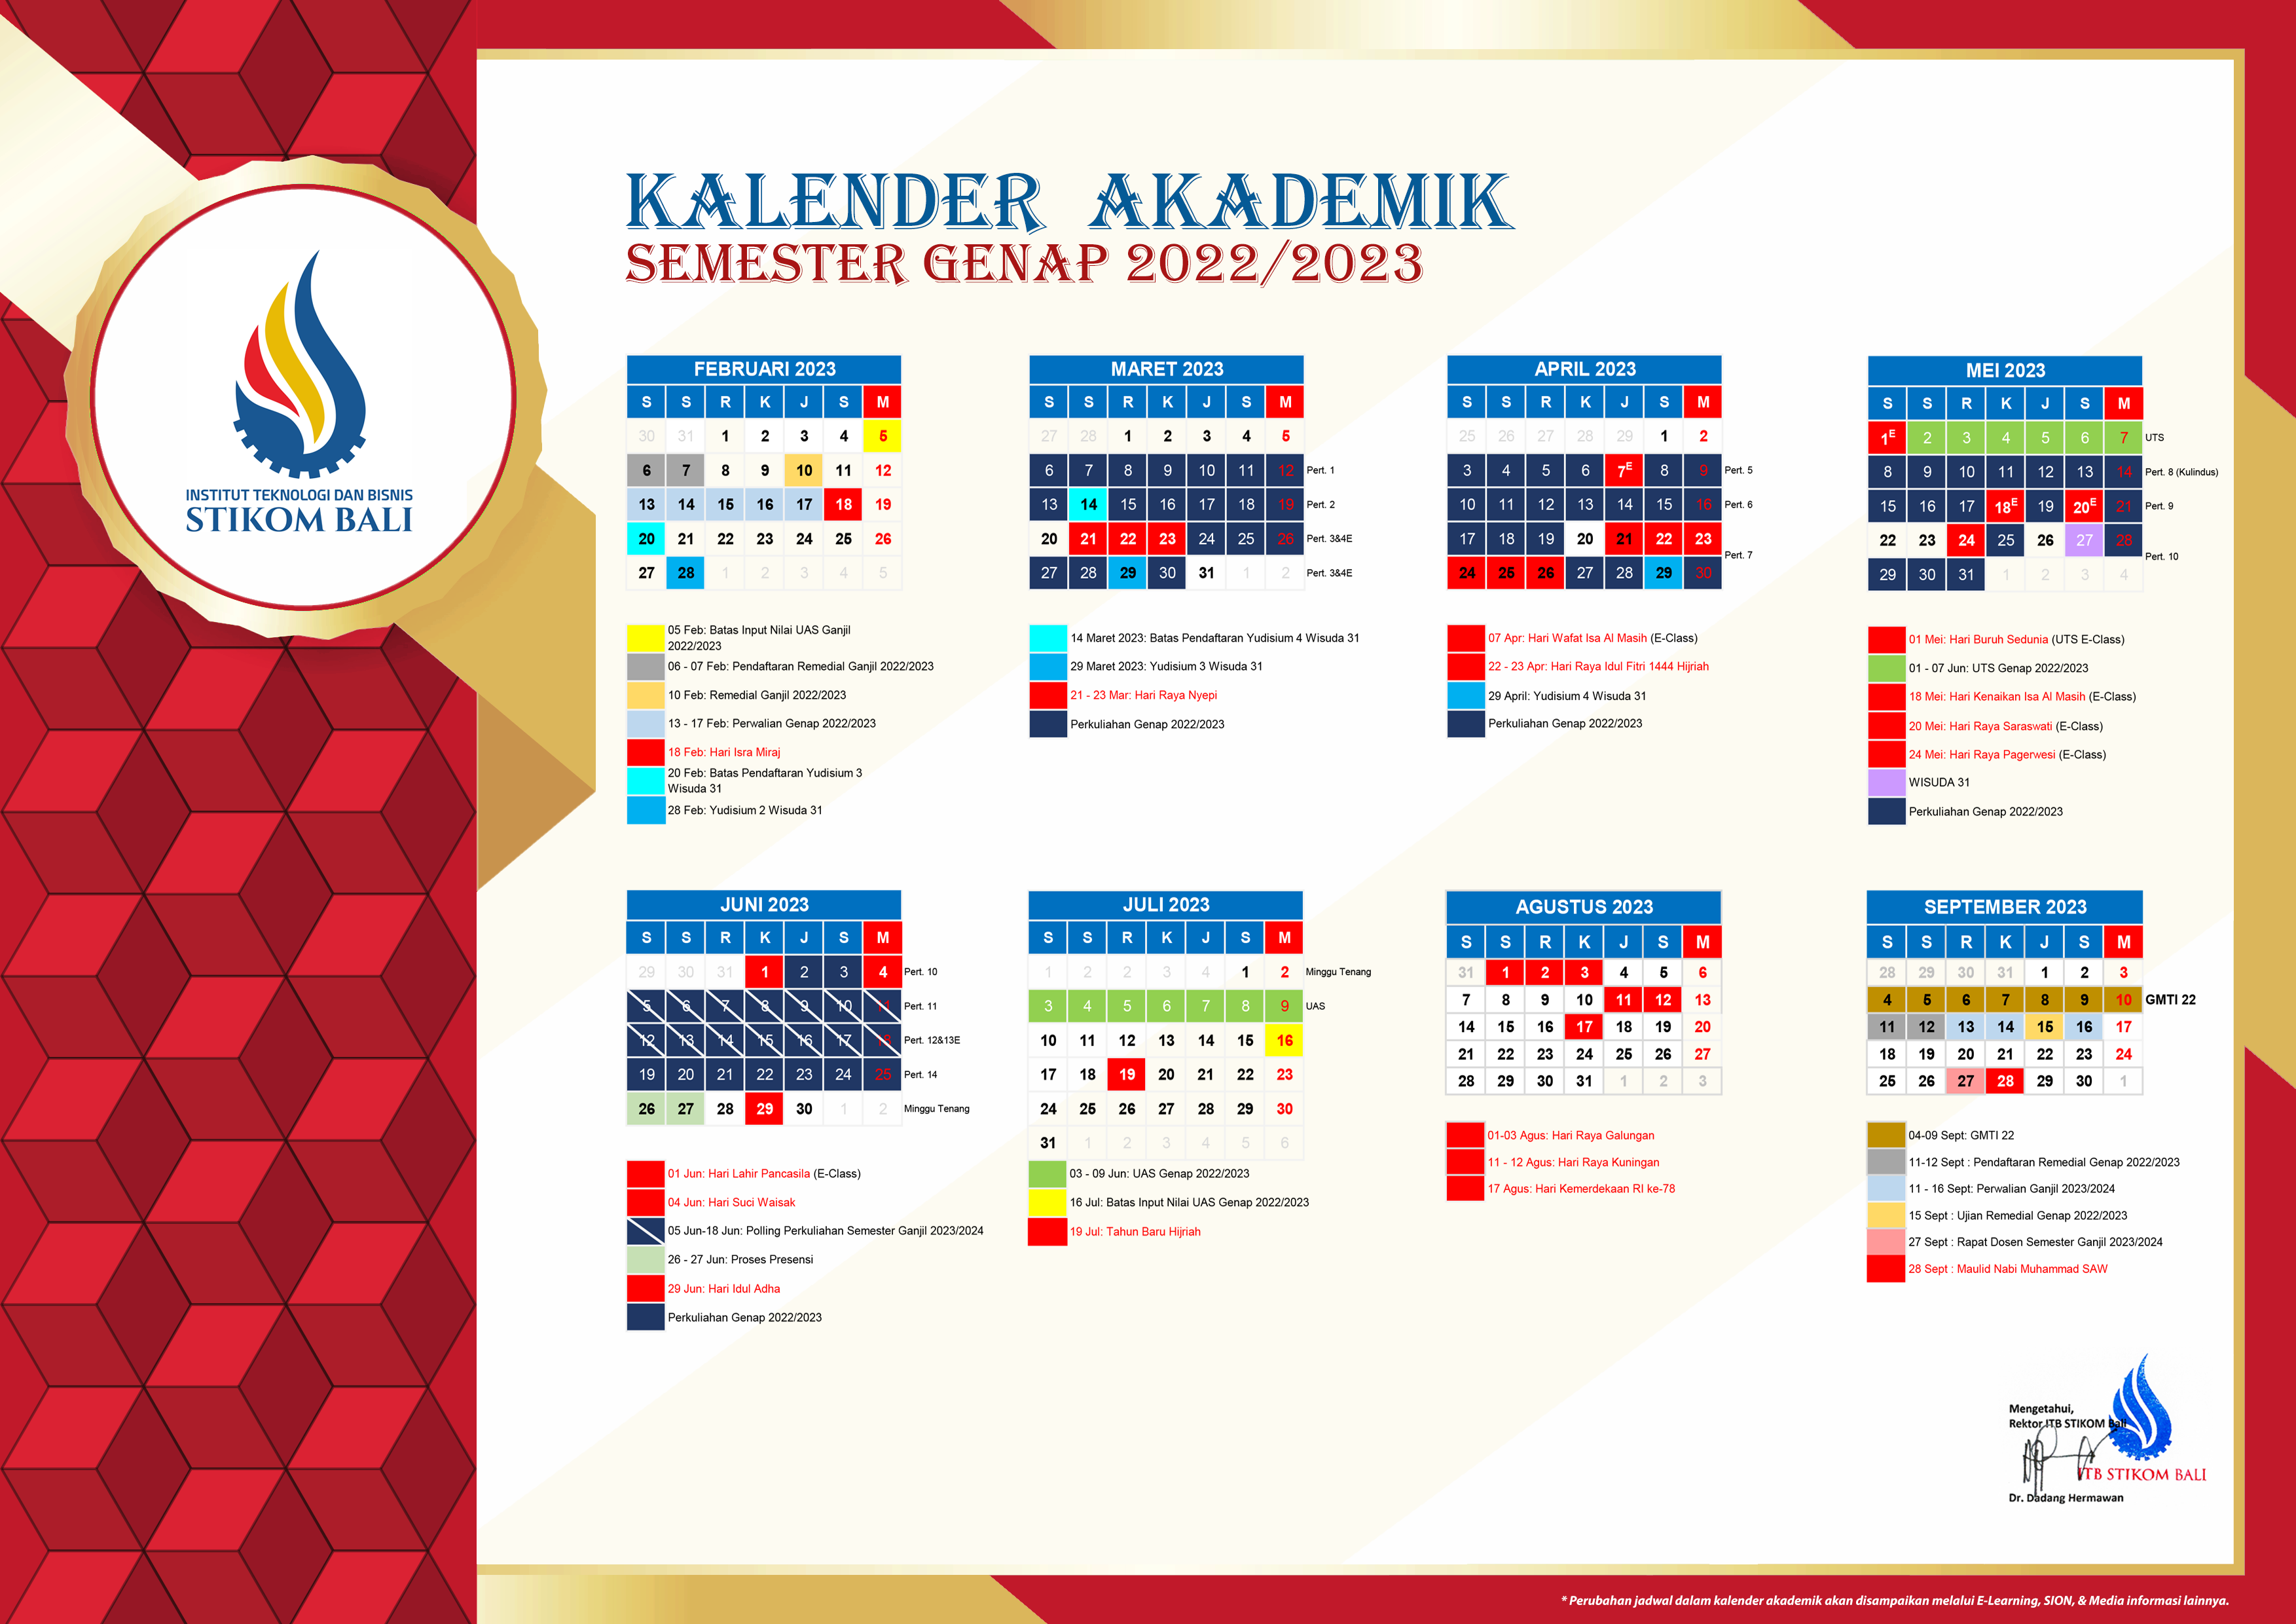 Attachment Kalender Akademik Semester Genap 2022-2023 genap.png